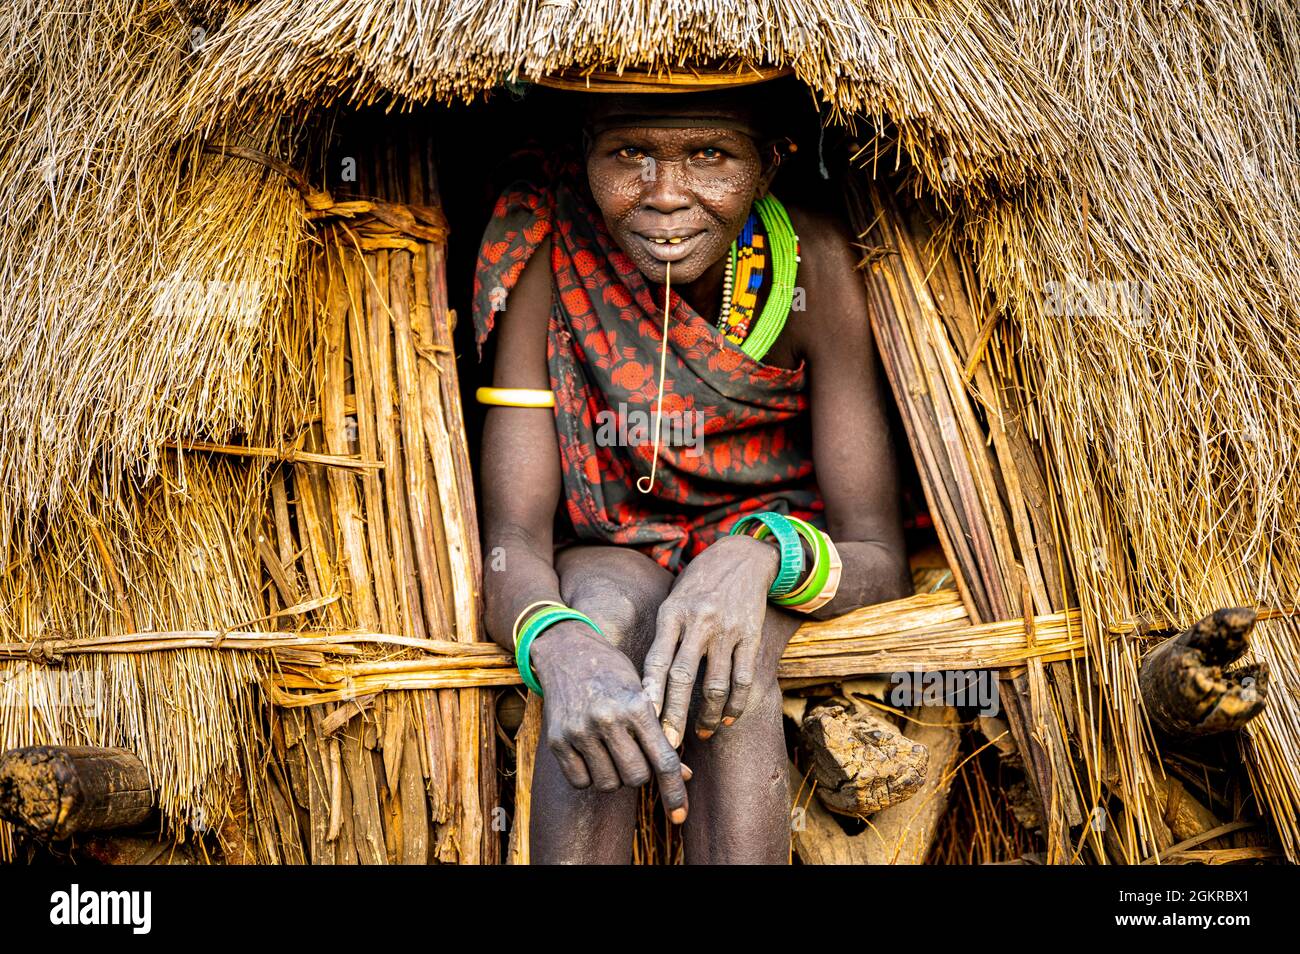 Cicatrice visage comme une marque de beauté sur la femme de la tribu Jiye assis dans sa hutte, État d'Equatoria de l'est, Soudan du Sud, Afrique Banque D'Images